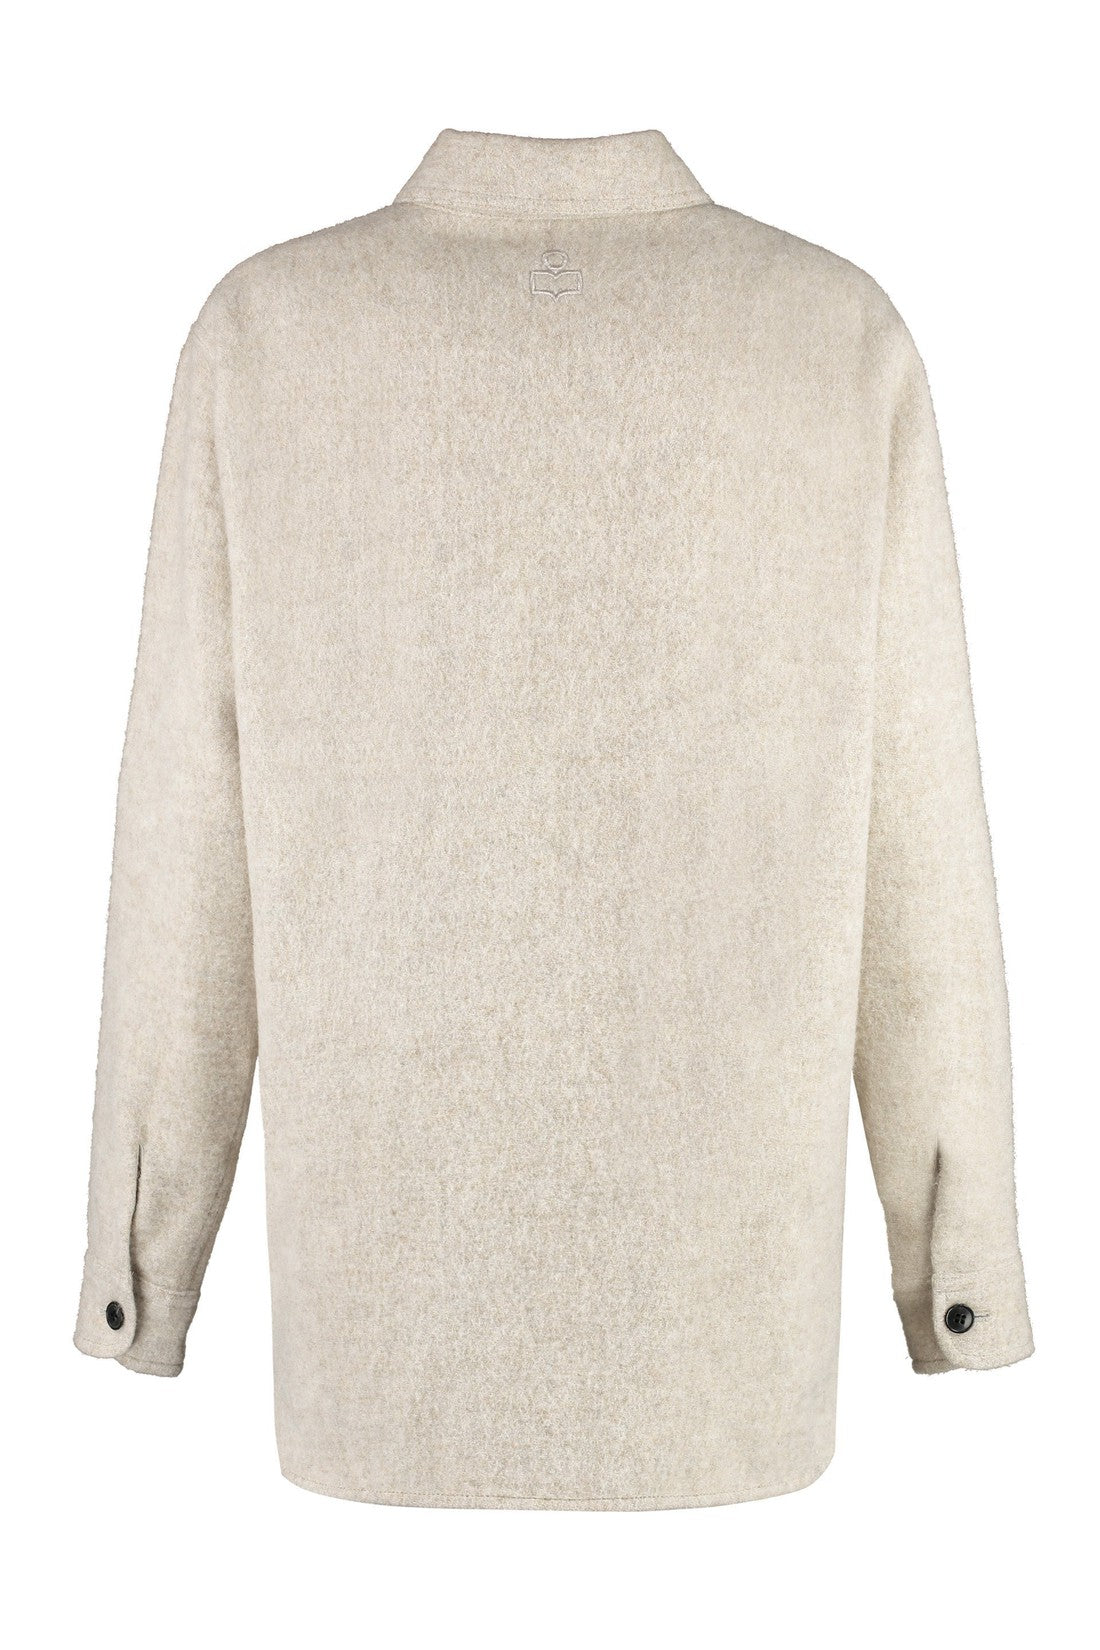 Isabel Marant Étoile-OUTLET-SALE-Faxon wool overshirt-ARCHIVIST